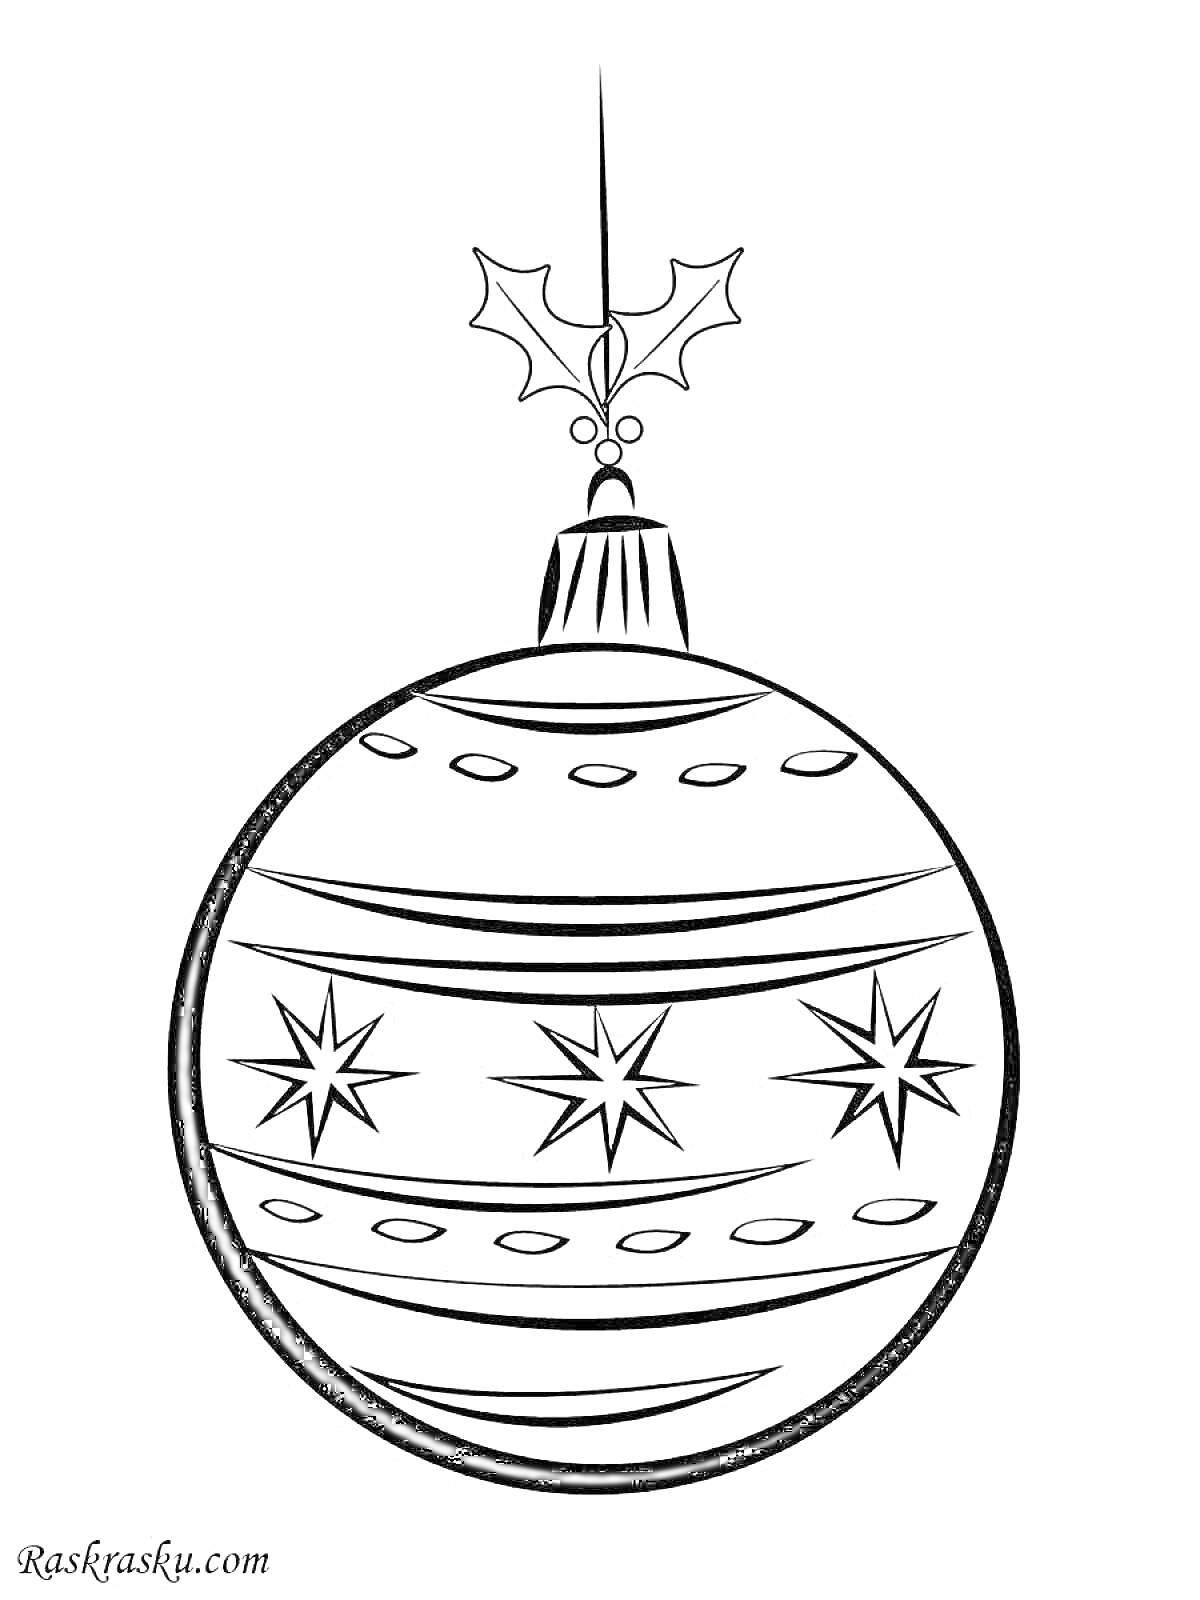 Раскраска Шар новогодний с узором в виде звездочек и листом остролиста сверху